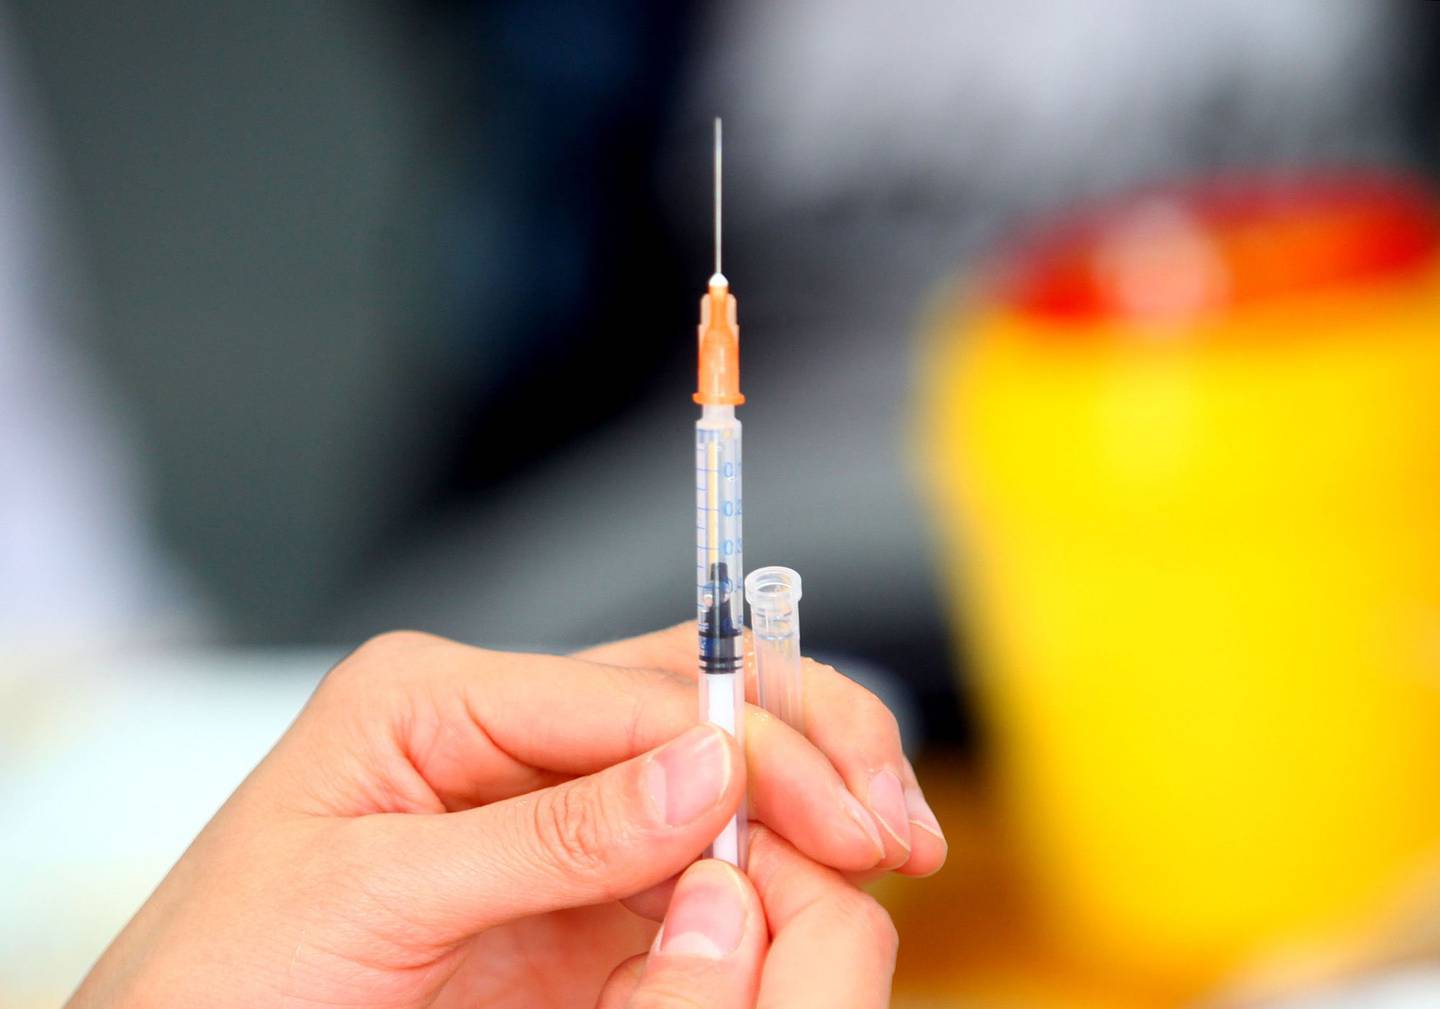 Un trabajador médico se prepara para inyectar una vacuna contra la gripe A/H1N1 a un estudiante en una escuela secundaria el 9 de noviembre de 2009 en Xian de la provincia de Shaanxi, China.